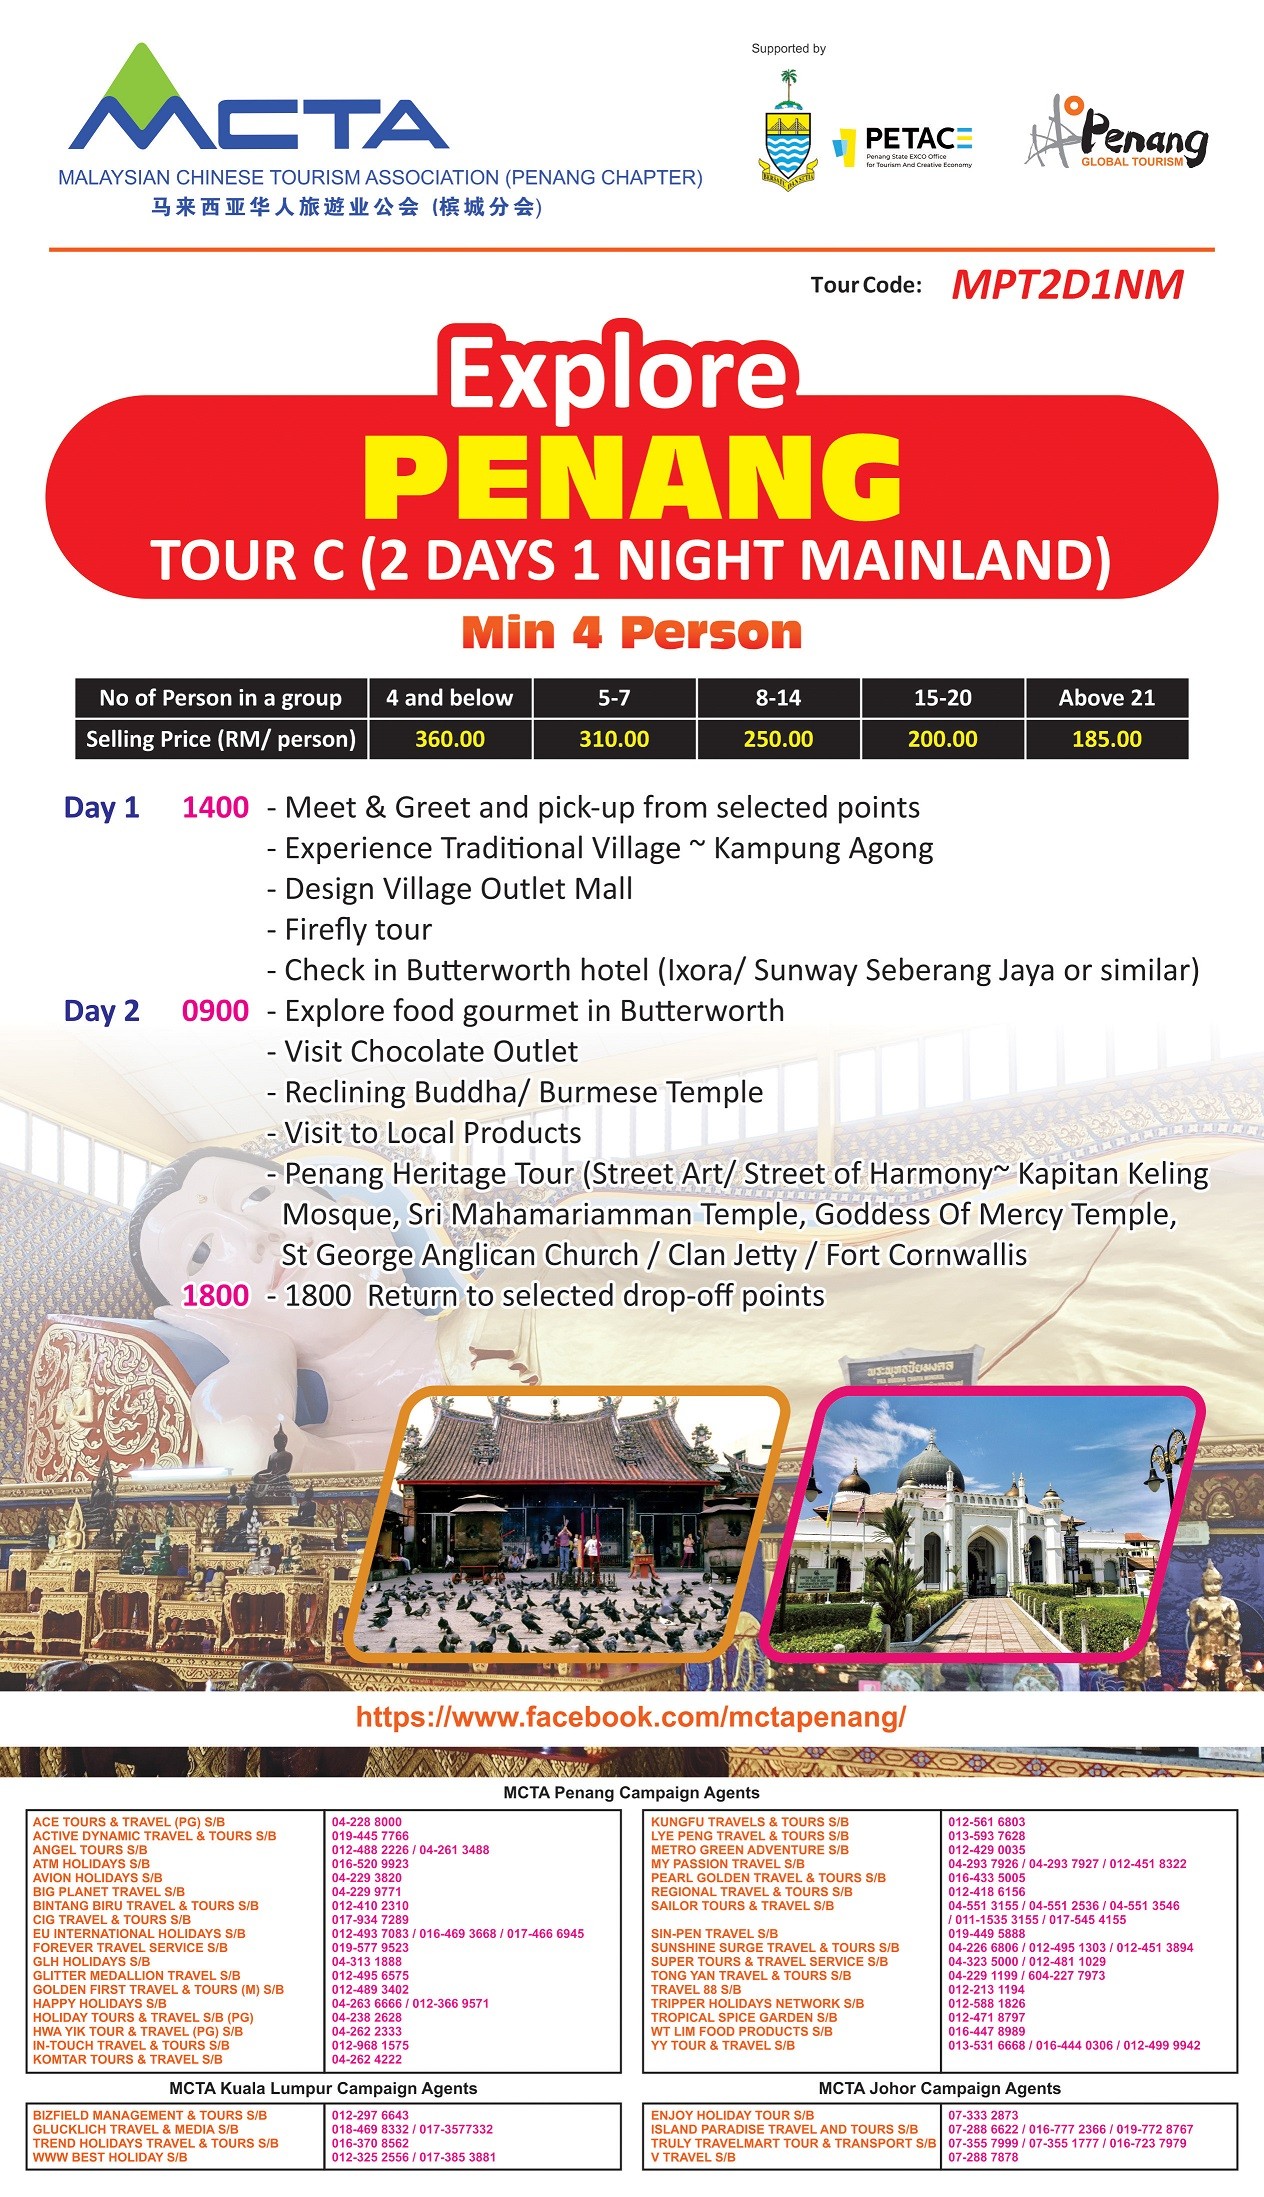 Explore Penang - Tour C (2 Days 1 Night Mainland)